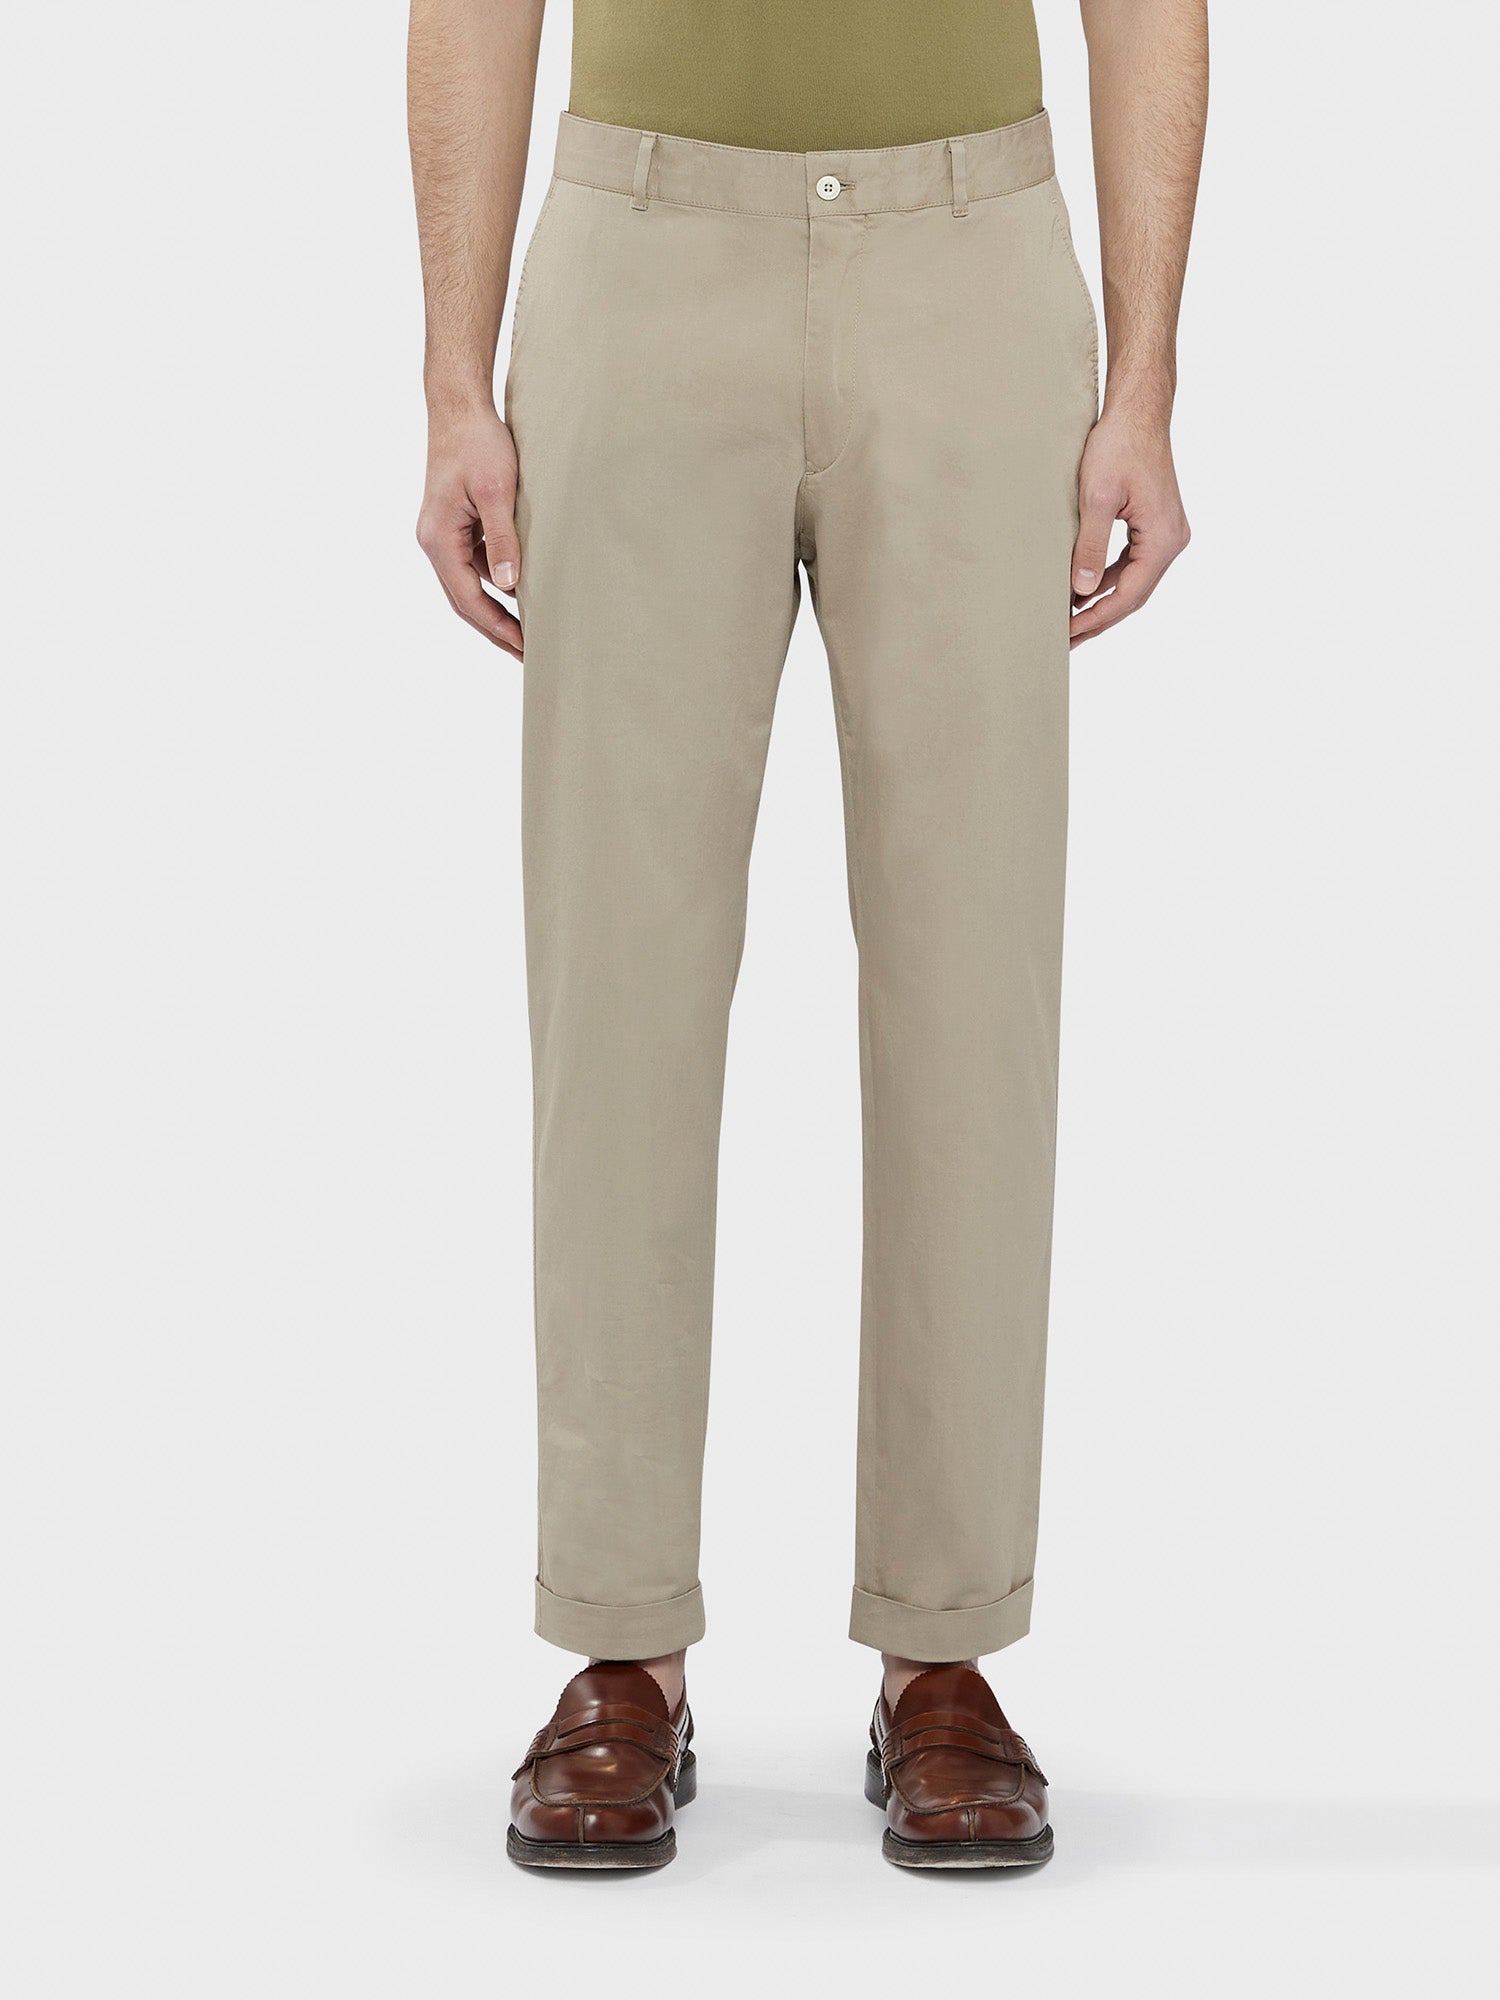 Caruso Menswear Abbigliamento Uomo Pantaloni informale in cotone e elastane sabbia fit regular indossato